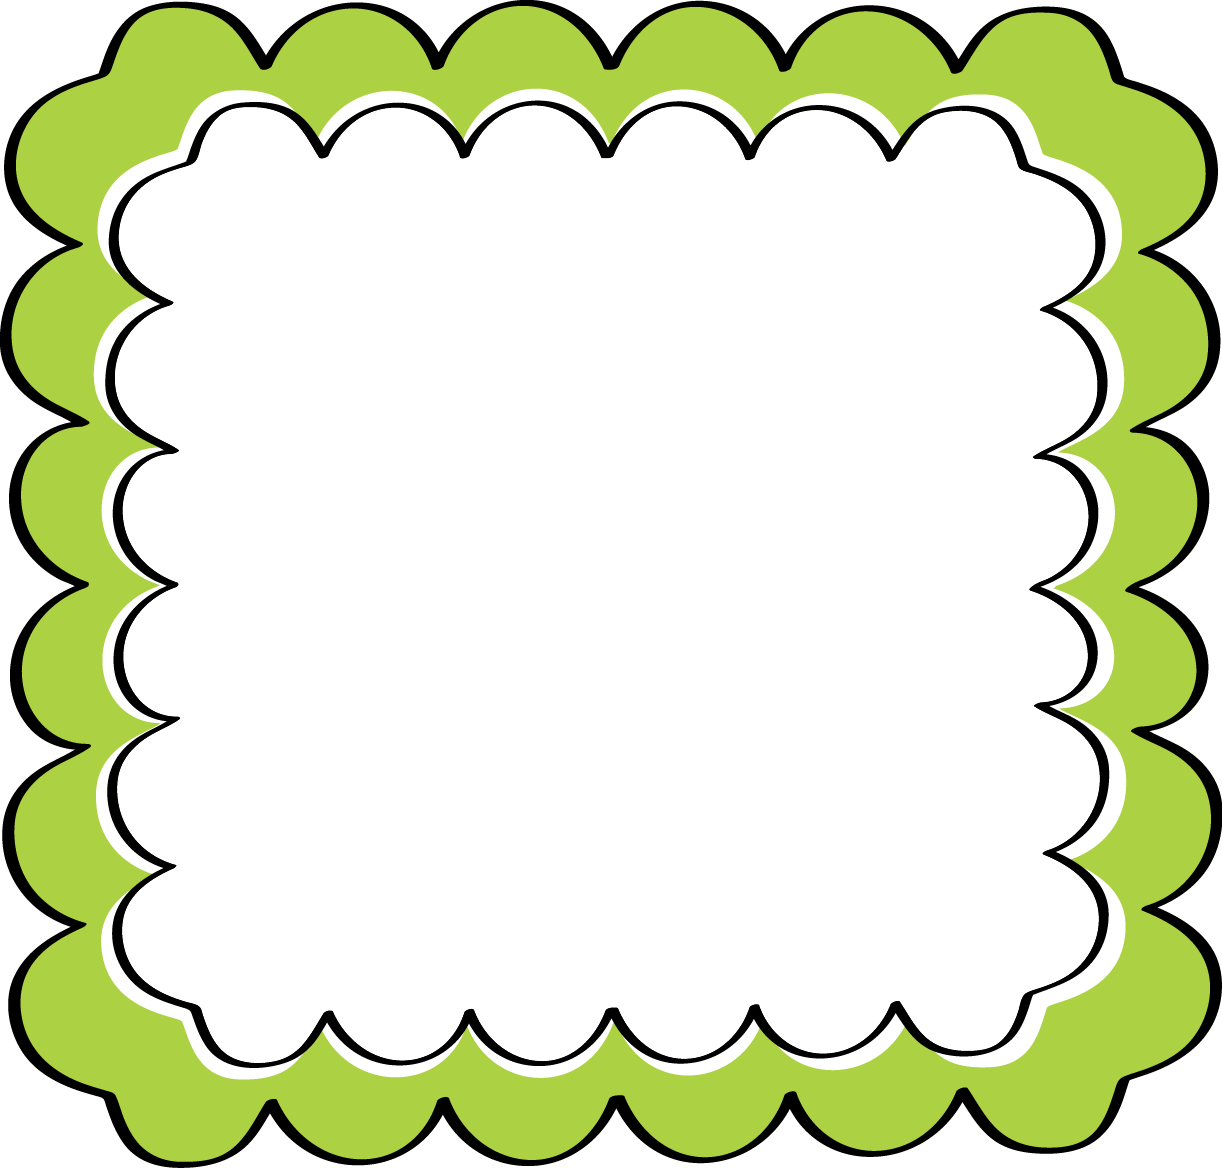 Download Green Border Frame File HQ PNG Image | FreePNGImg